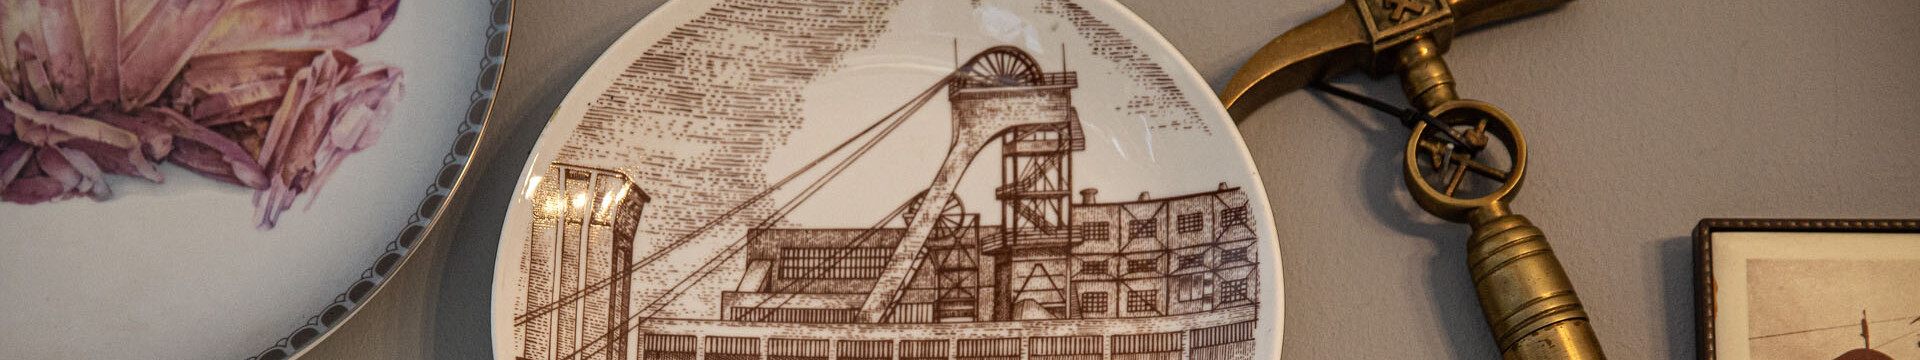 Ein Motivteller mit der Abbildung des Bergwerks Westerholt und ein Hammer hängen als Andenken an den Bergbau im Ruhrgebiet an einer Wand. 